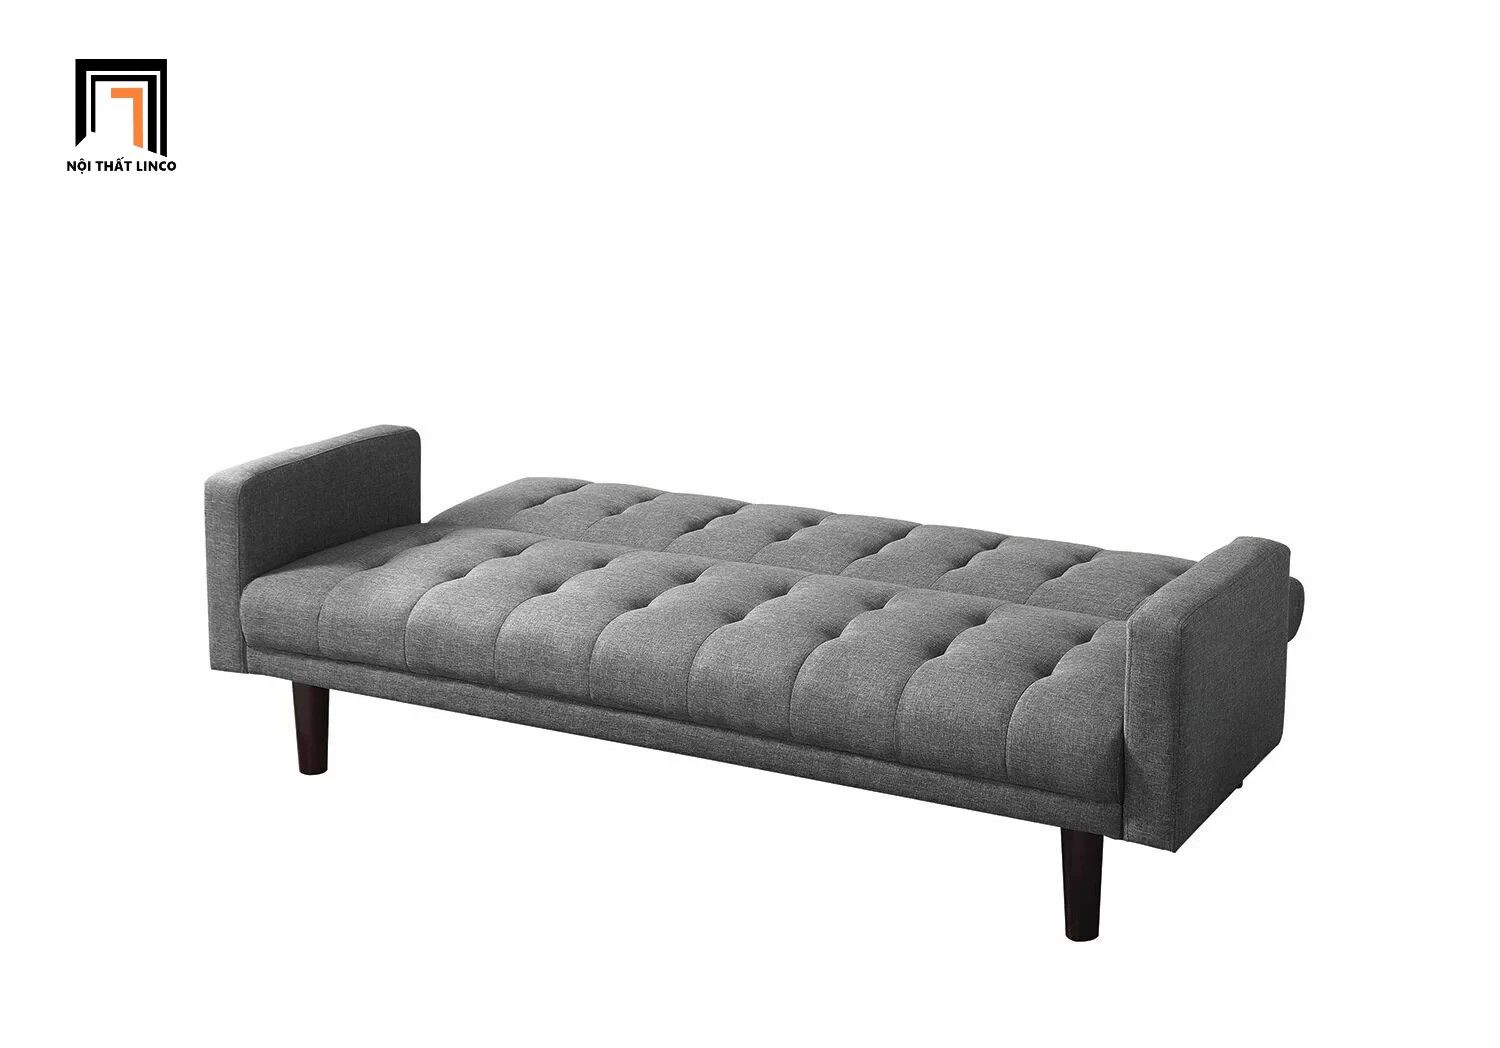  Ghế sofa giường gấp gọn dài 2m GB76 Batrie màu xám giá rẻ 